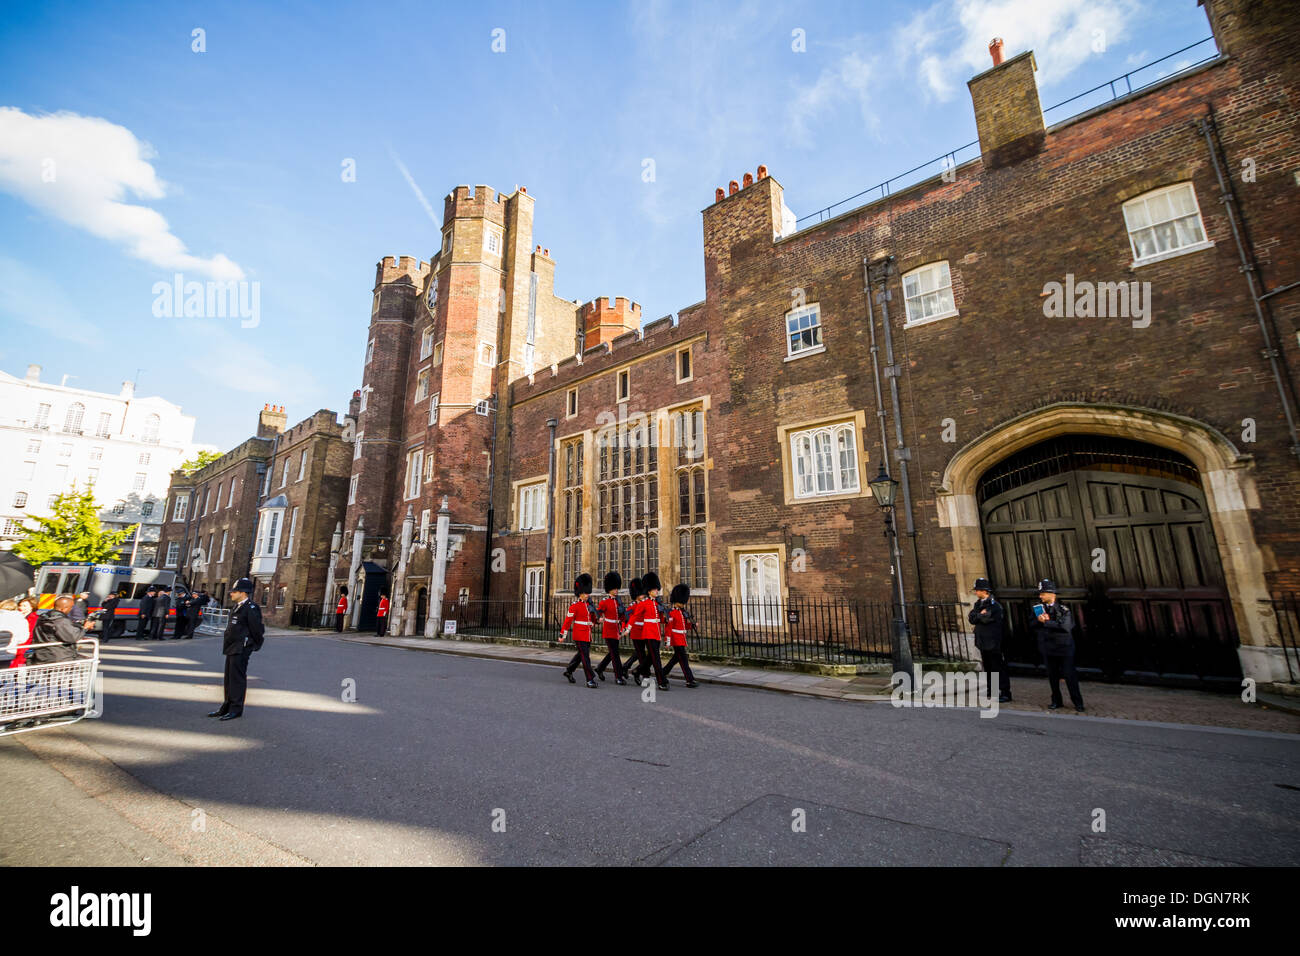 Real de los aficionados y la prensa esperan fuera de las puertas de St James's Palace como bebé Prince George es bautizado. Londres, Reino Unido. Foto de stock